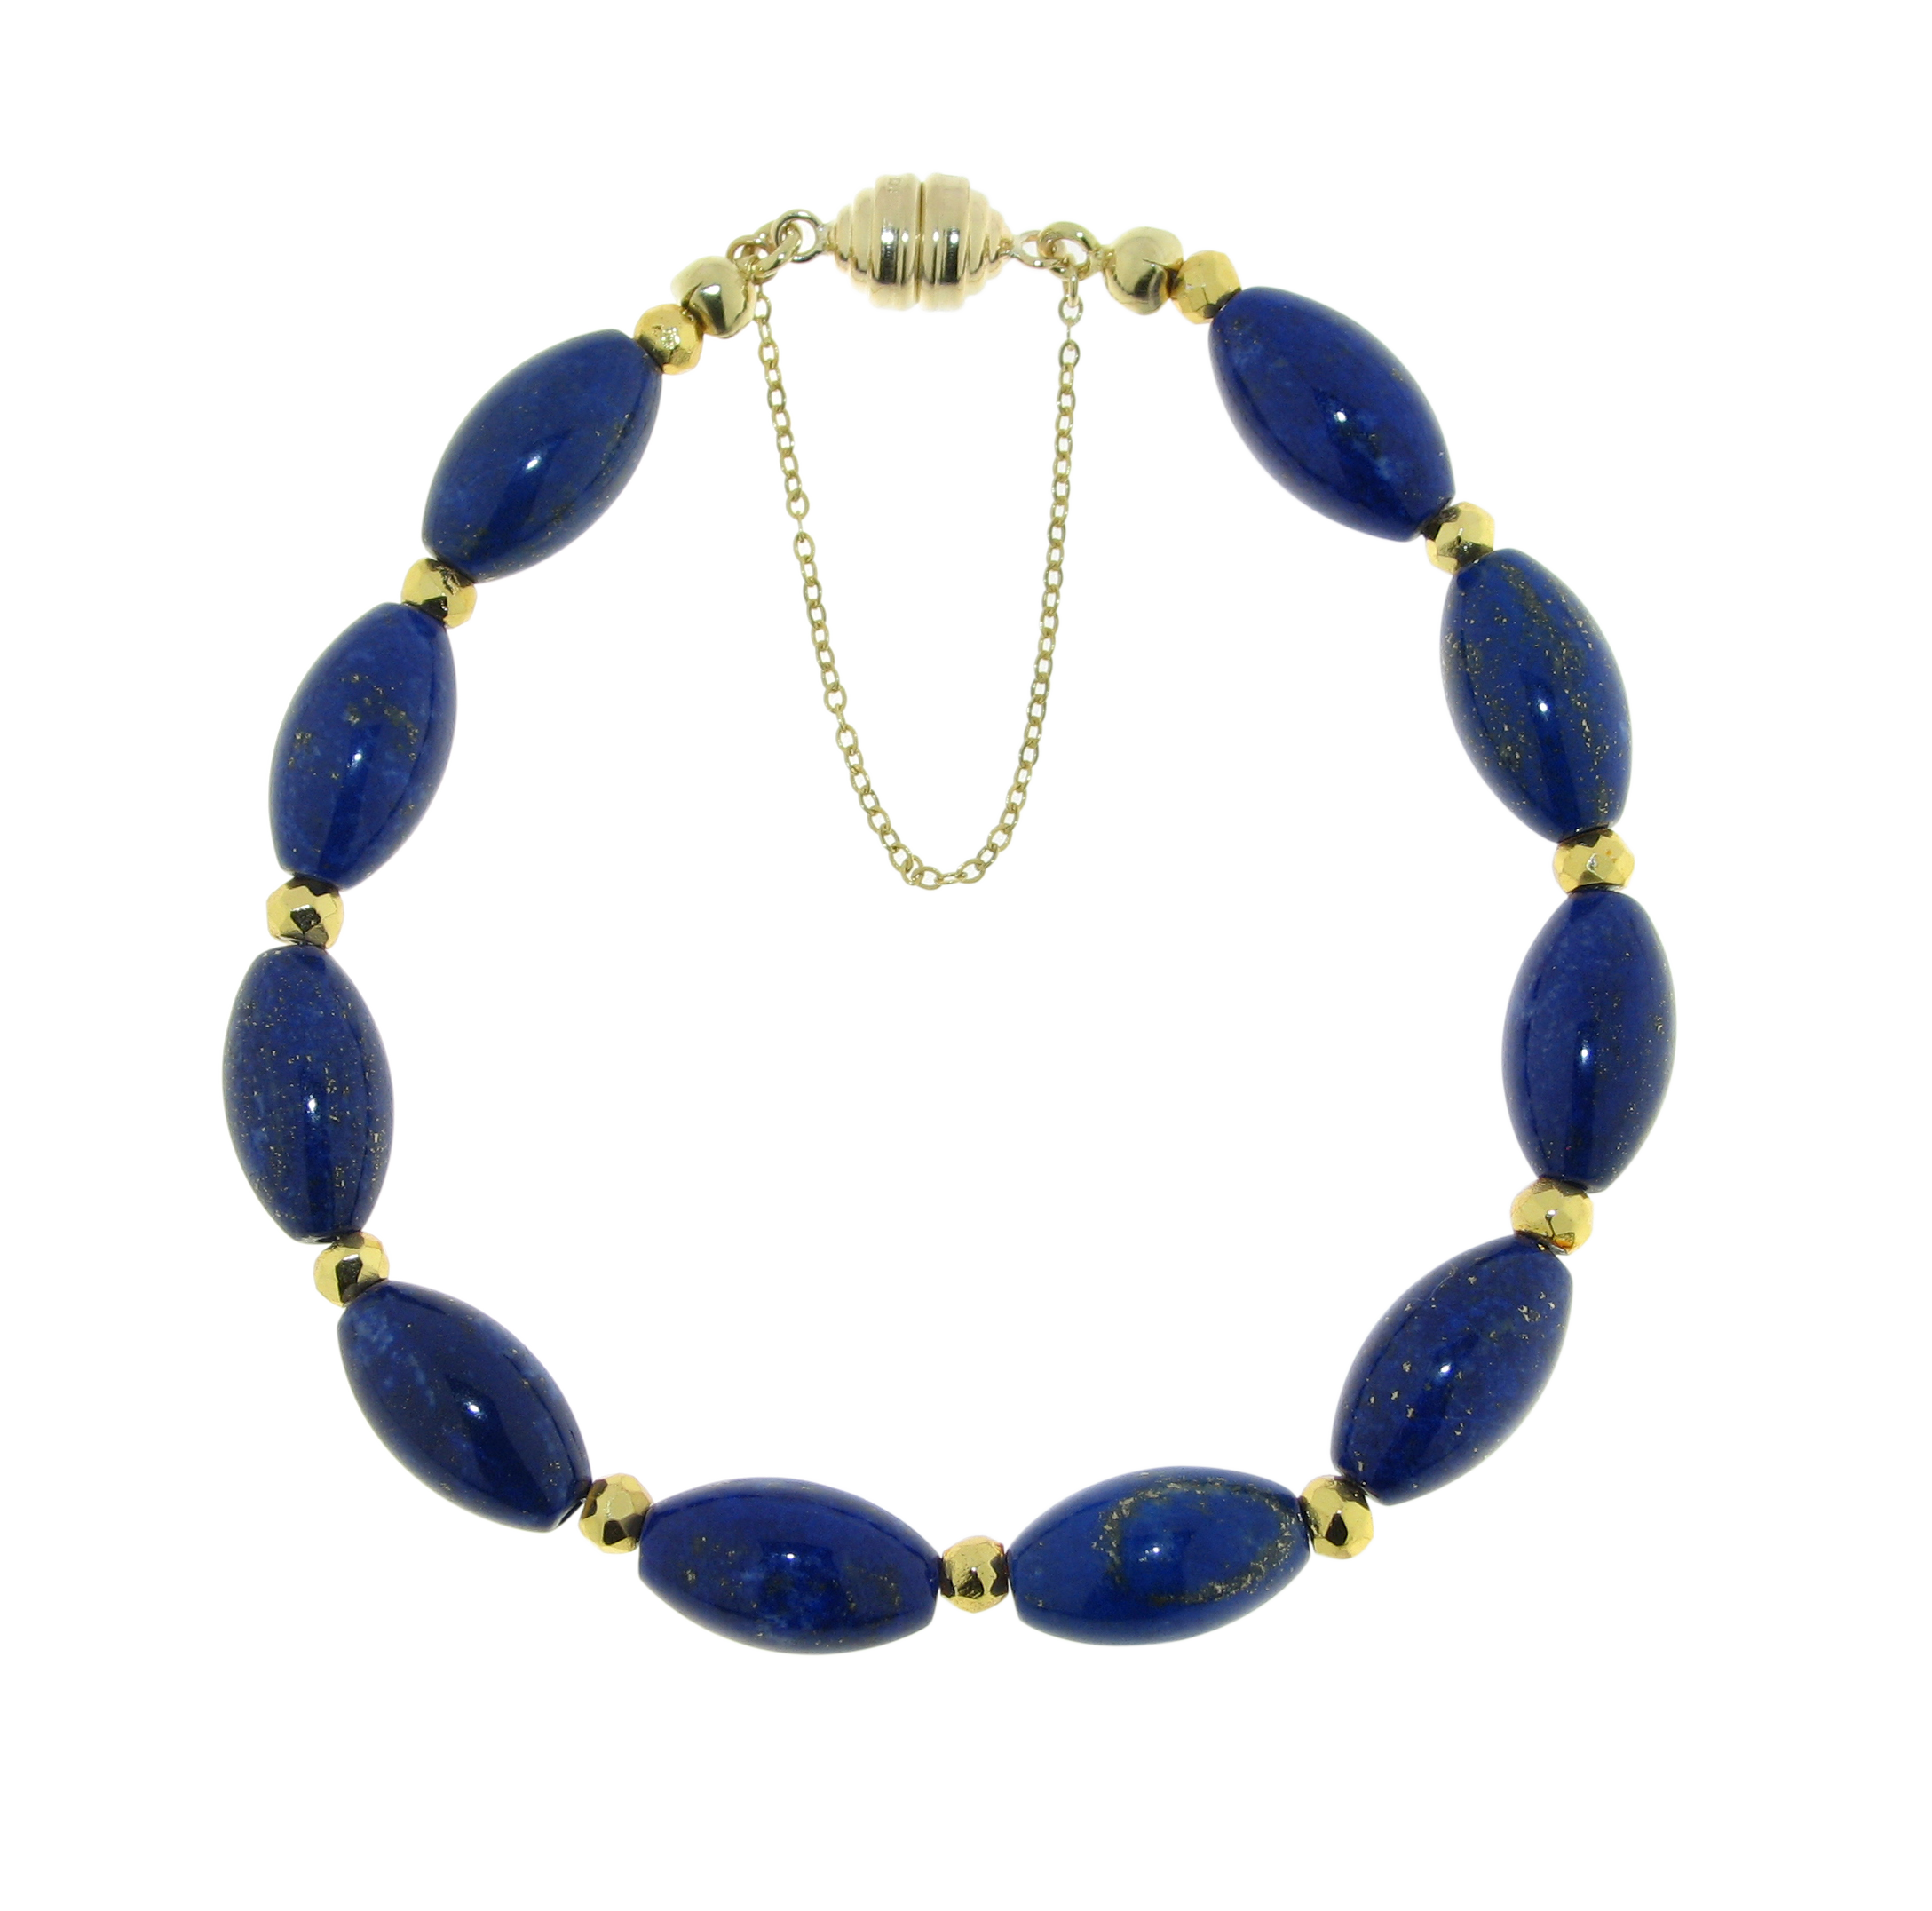 Armband mit glatten Lapis Lazuli Oliven und  goldcoated Pyrit Rondellen mit Magnetverschluss 375 GG